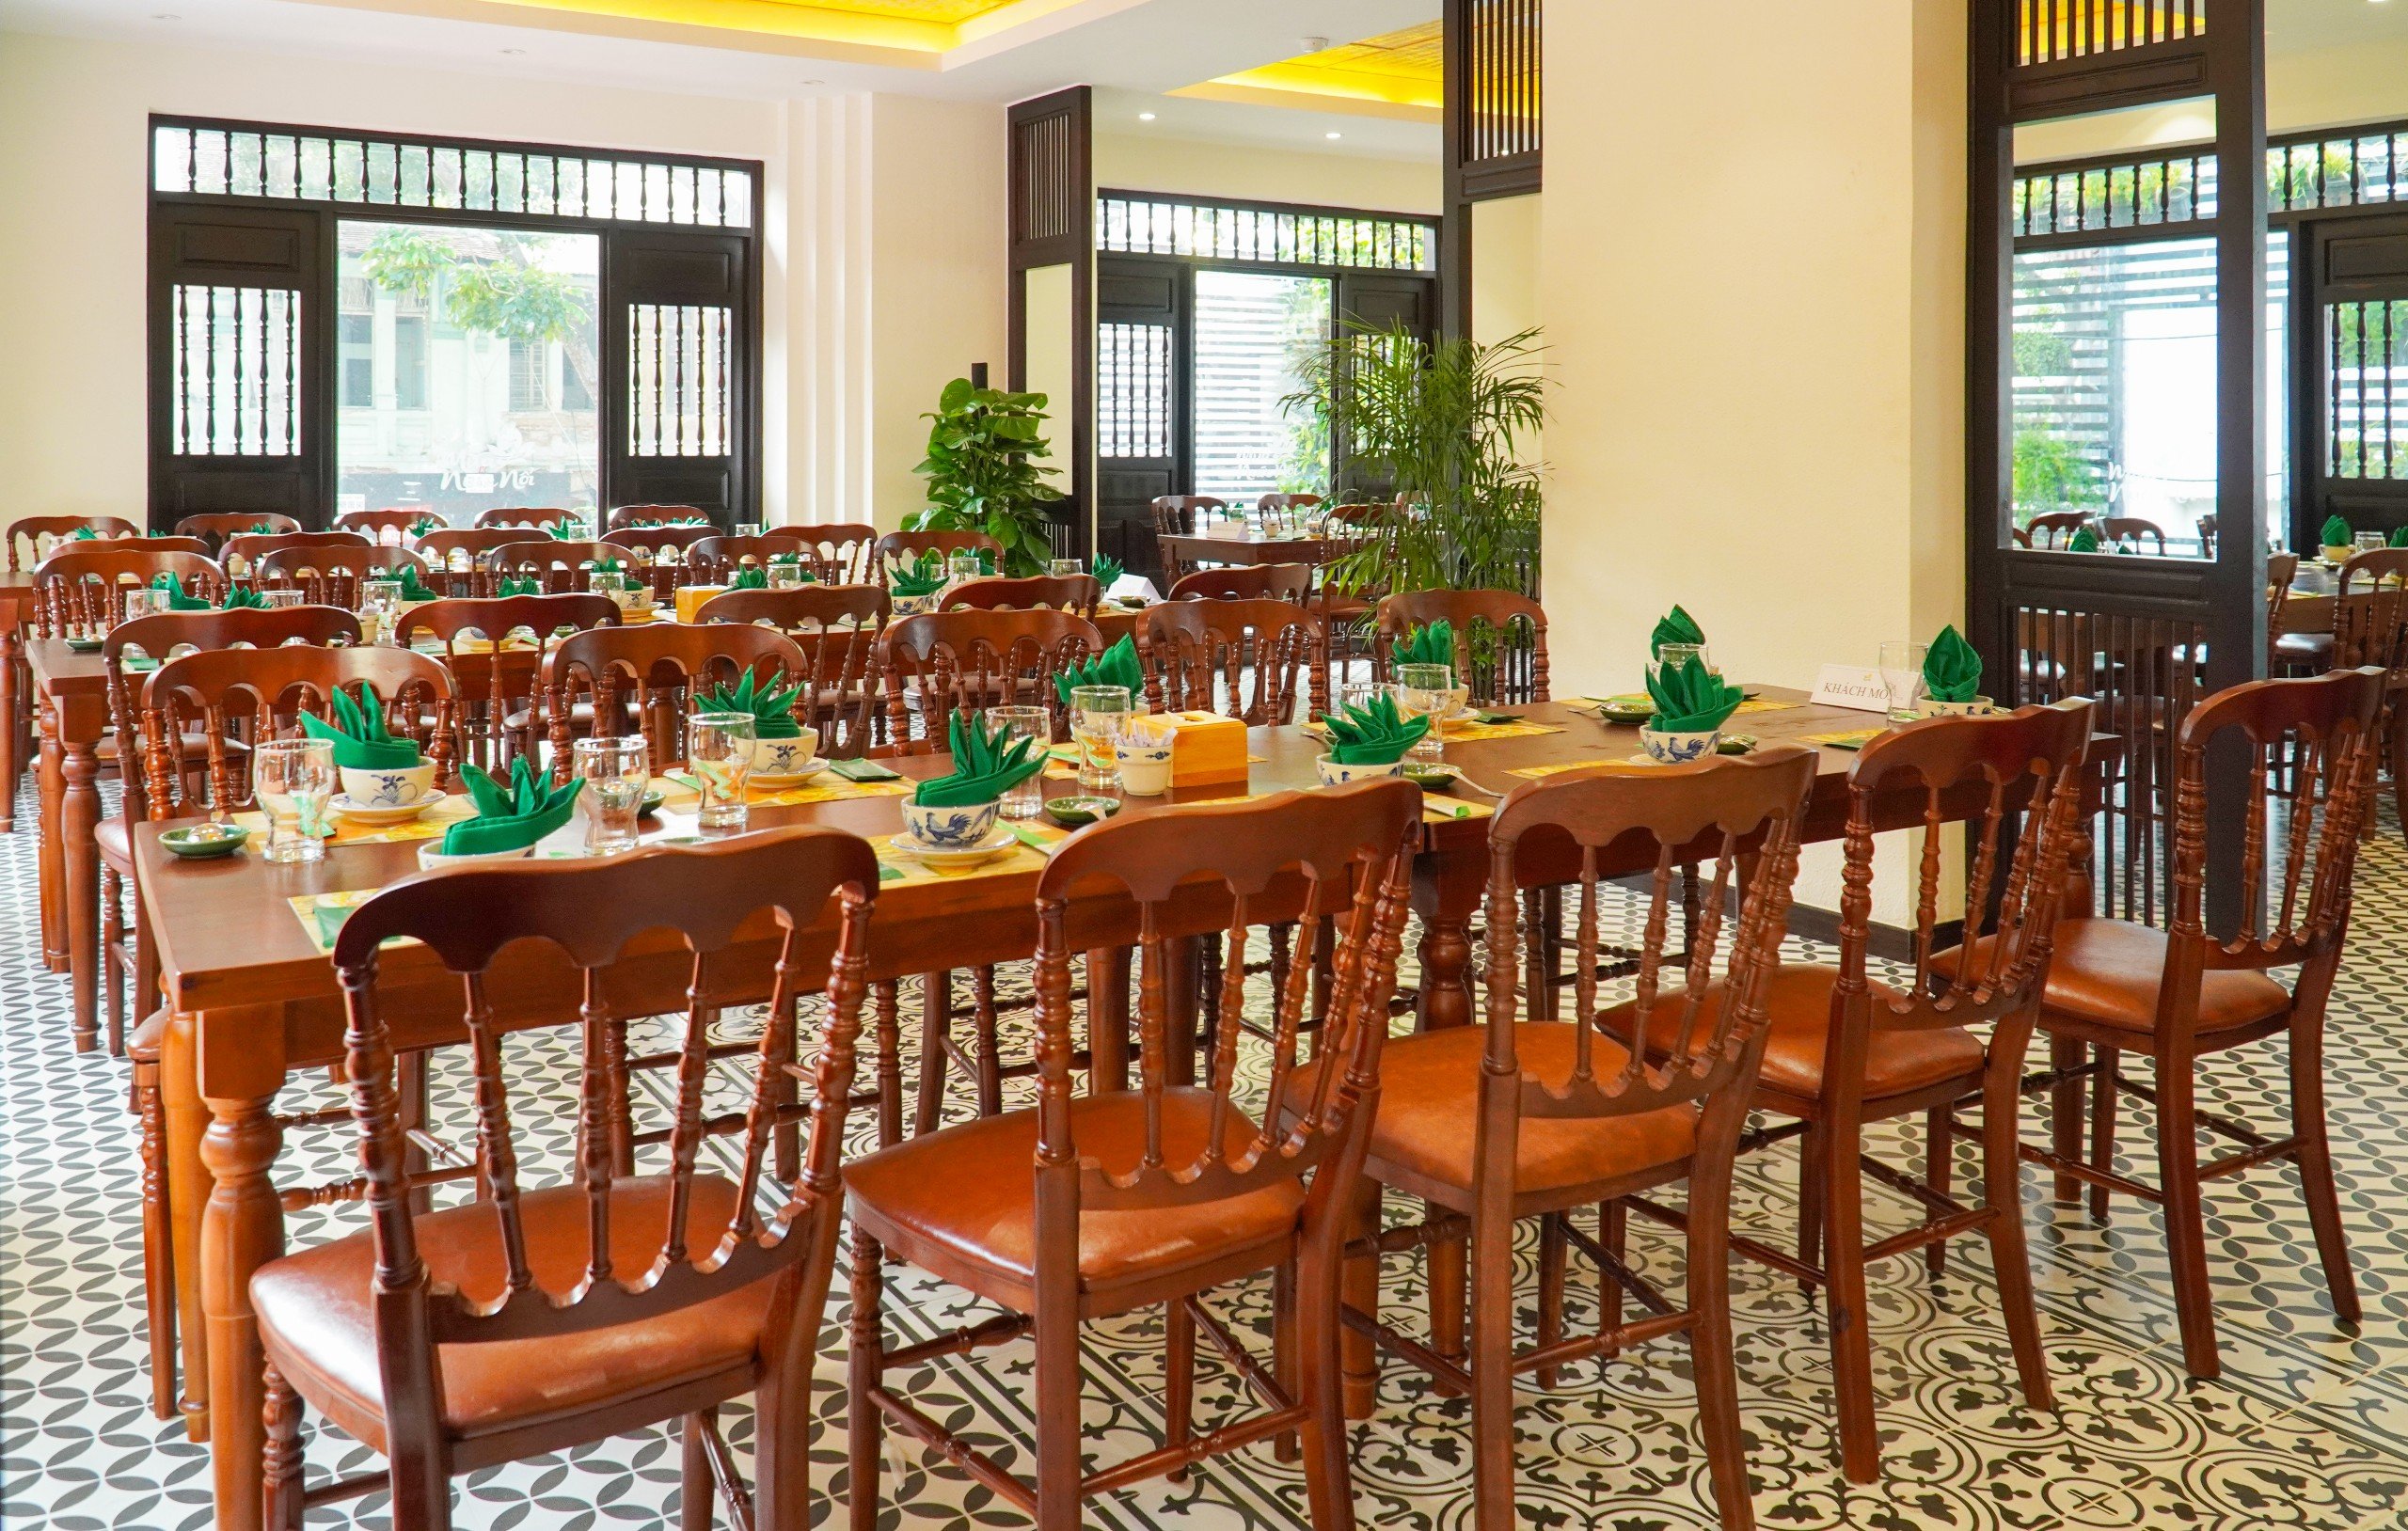 Không gian nhà hàng được trang trí đậm chất miền Tây với tông màu nâu gỗ chủ đạo.